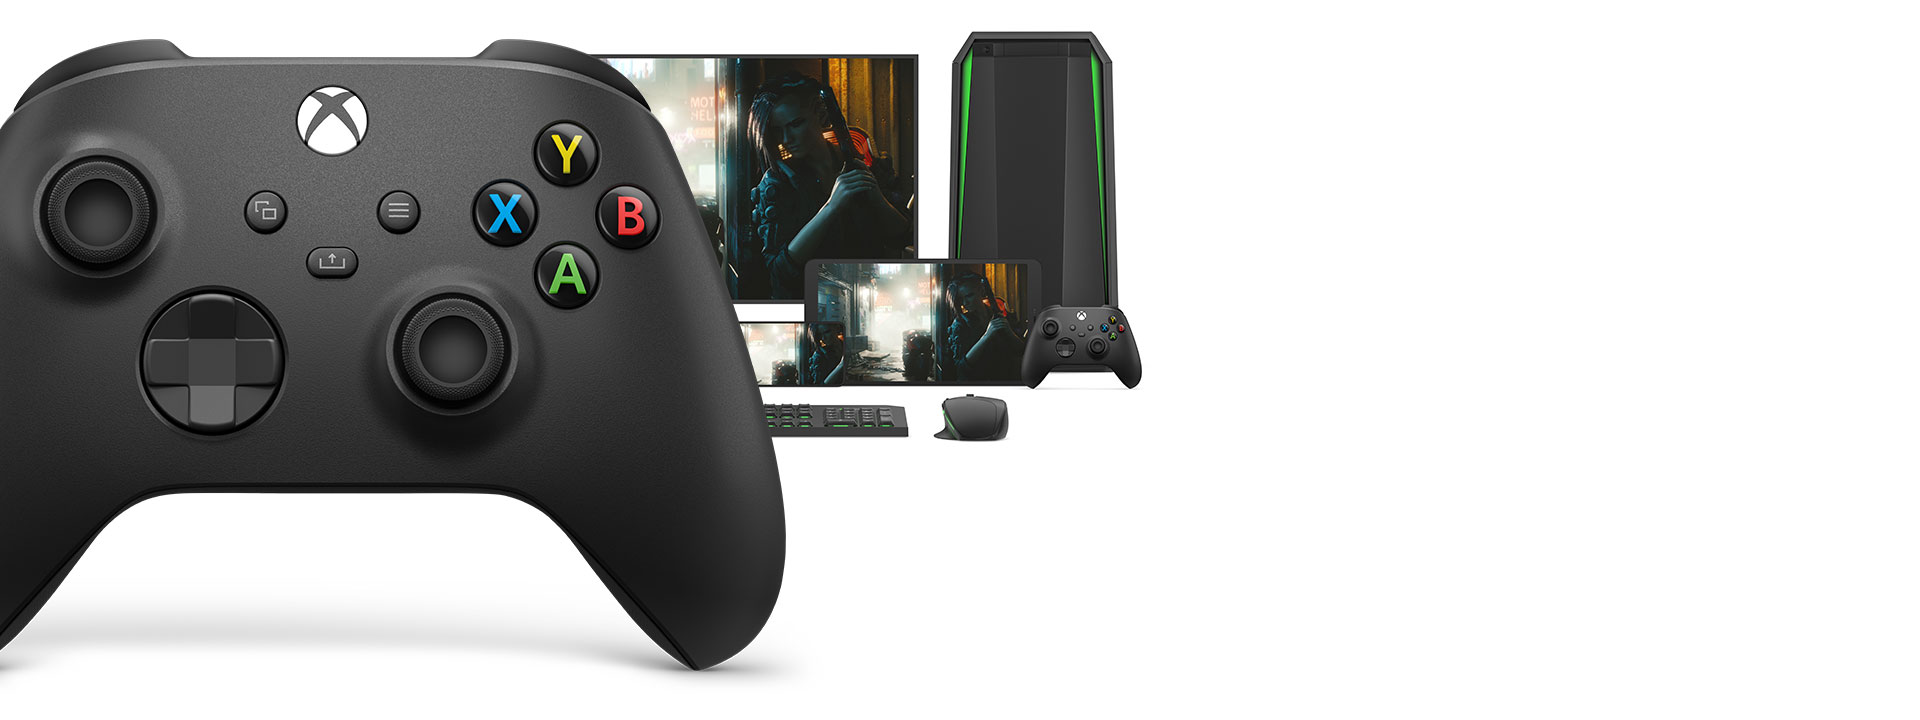 Xbox draadloze controller voor een computer, monitor, tablet, xbox draadloze controller, en een muis en toetsenbord